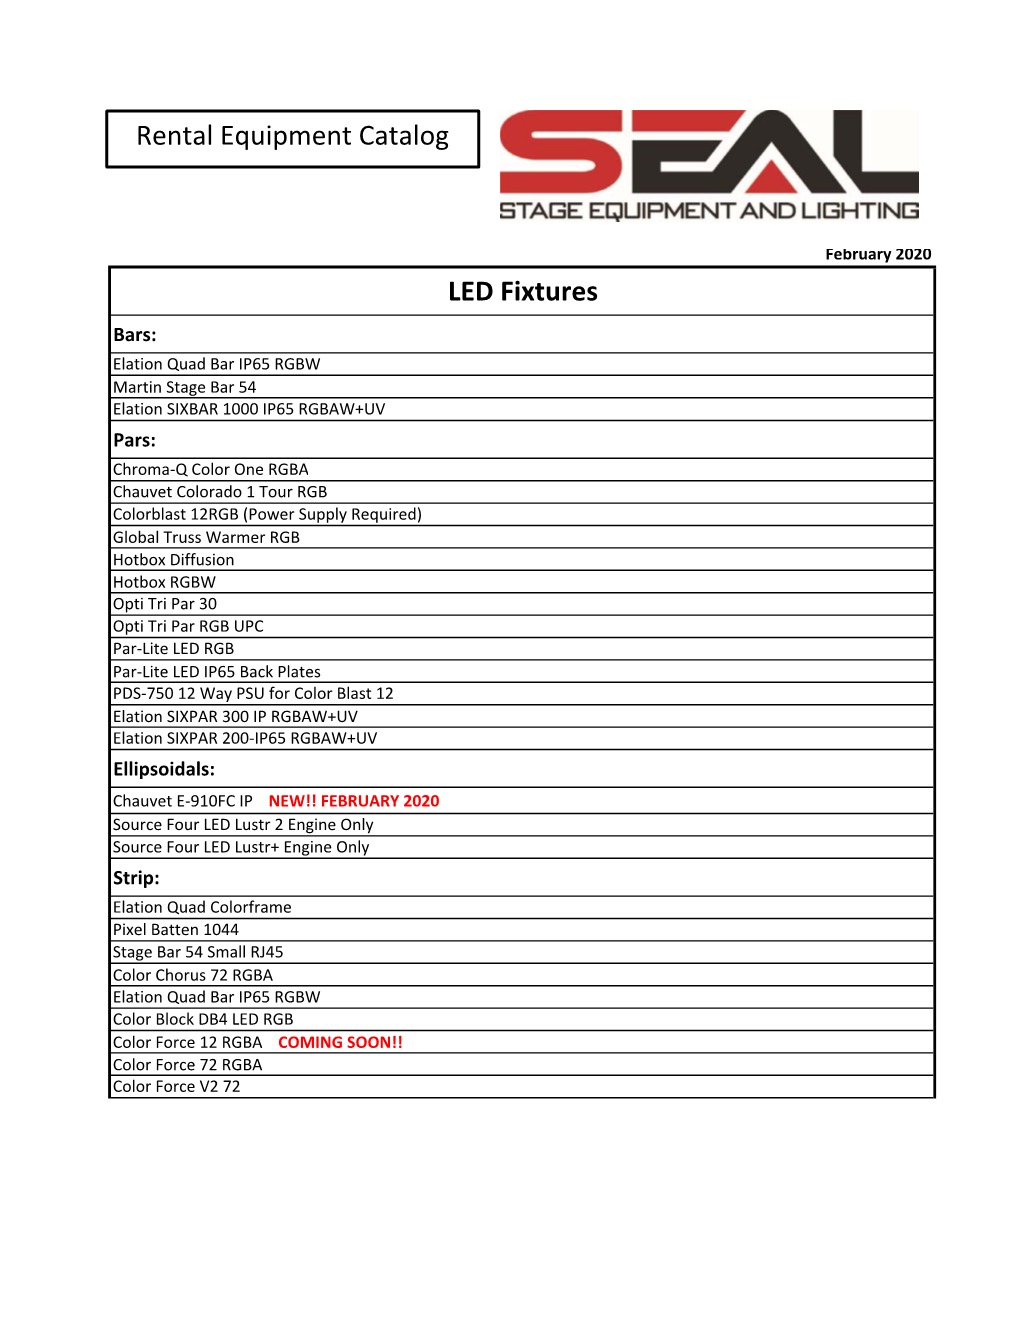 Copy of SEAL Rental Equipment Catalog 2020.Xlsx